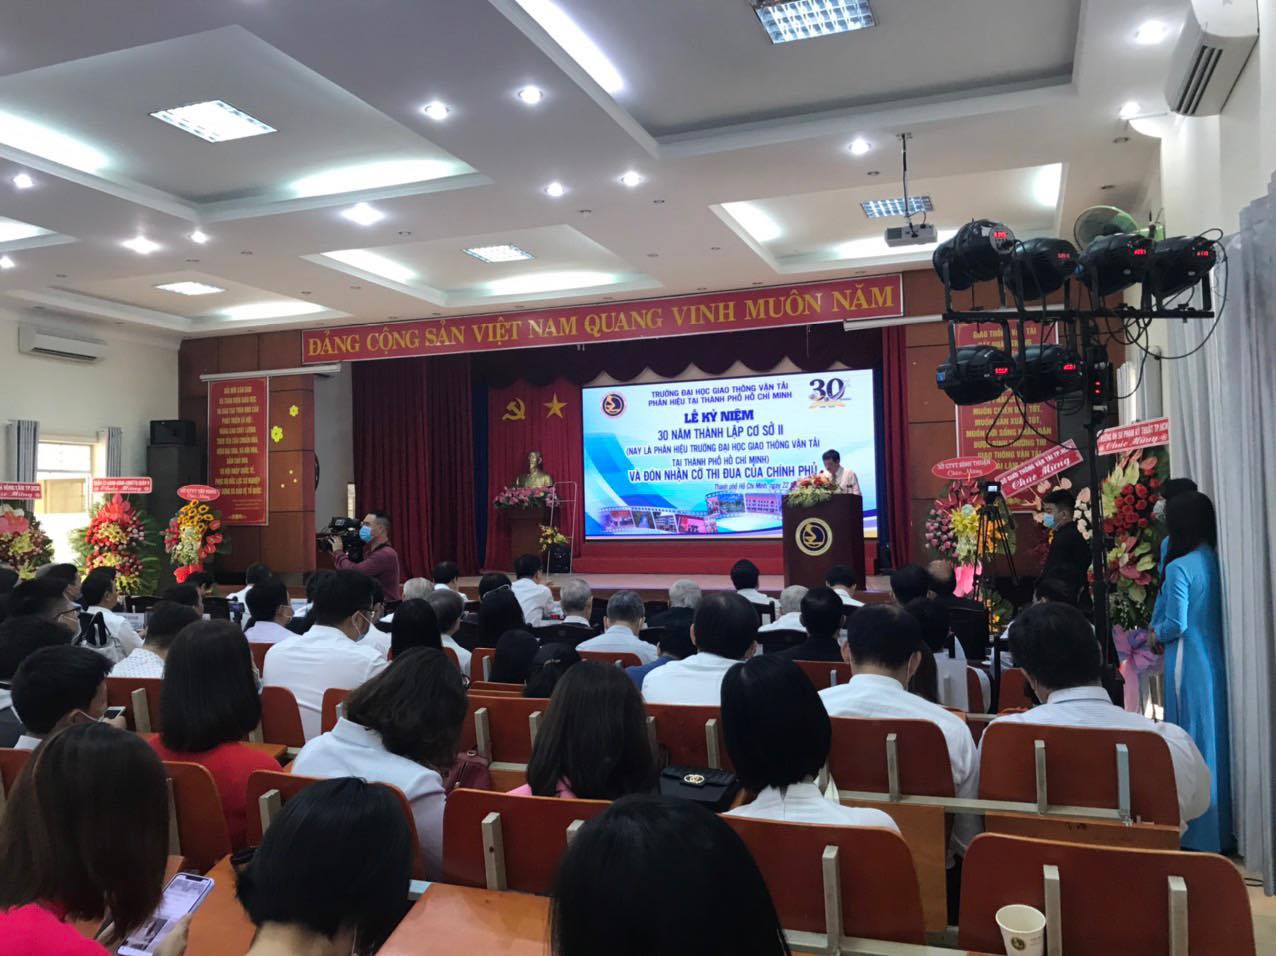 Phân hiệu Trường ĐH GTVT tại TP.HCM đón nhận Cờ thi đua của Chính phủ - Ảnh minh hoạ 2